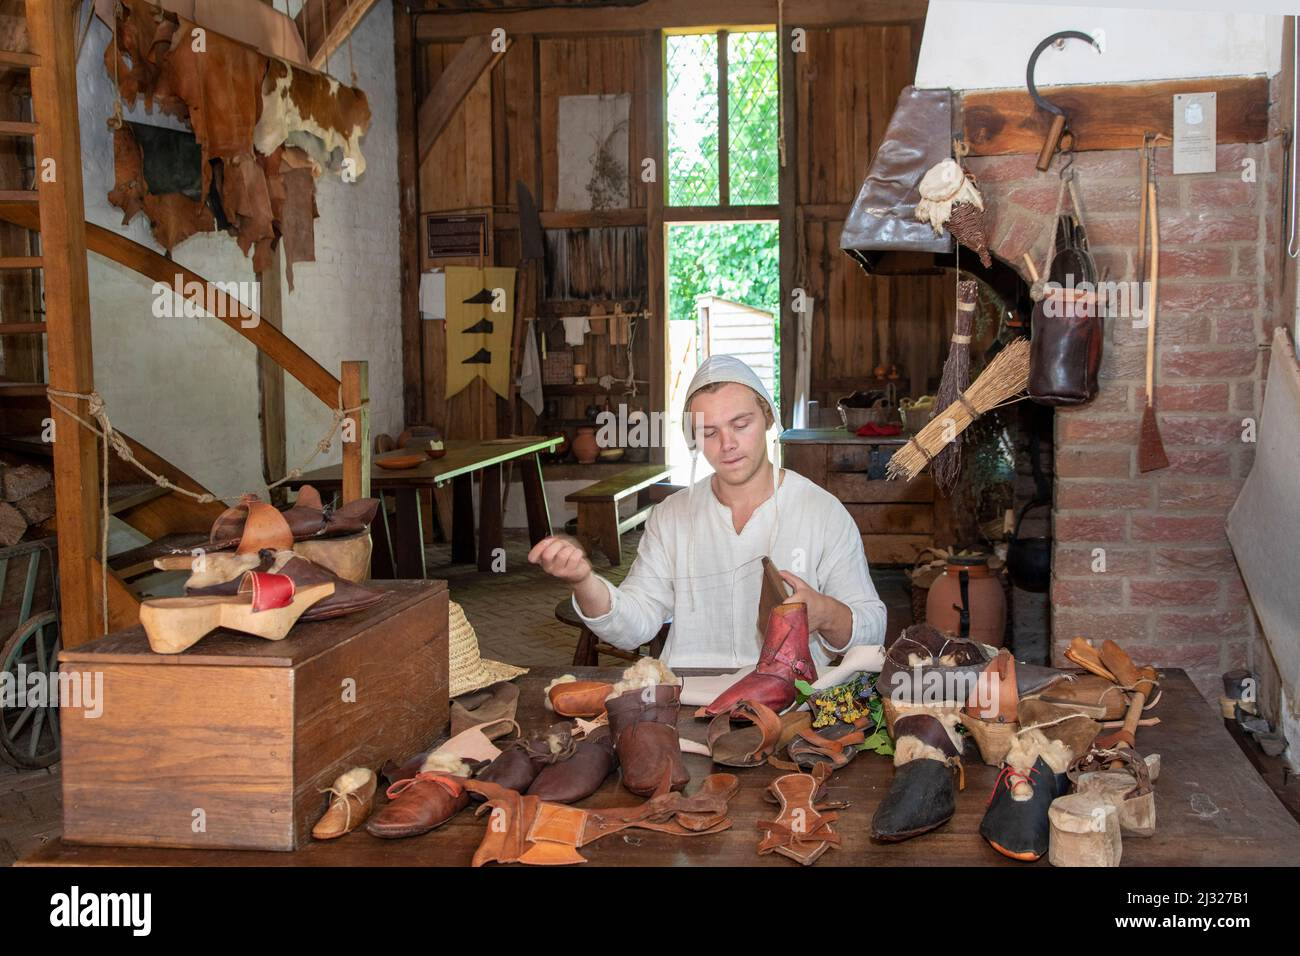 Pays-Bas, cordonnier dans son magasin du Moyen âge. Le parc d'Archeon montre une petite ville médiévale où la boutique peut être vue. Banque D'Images